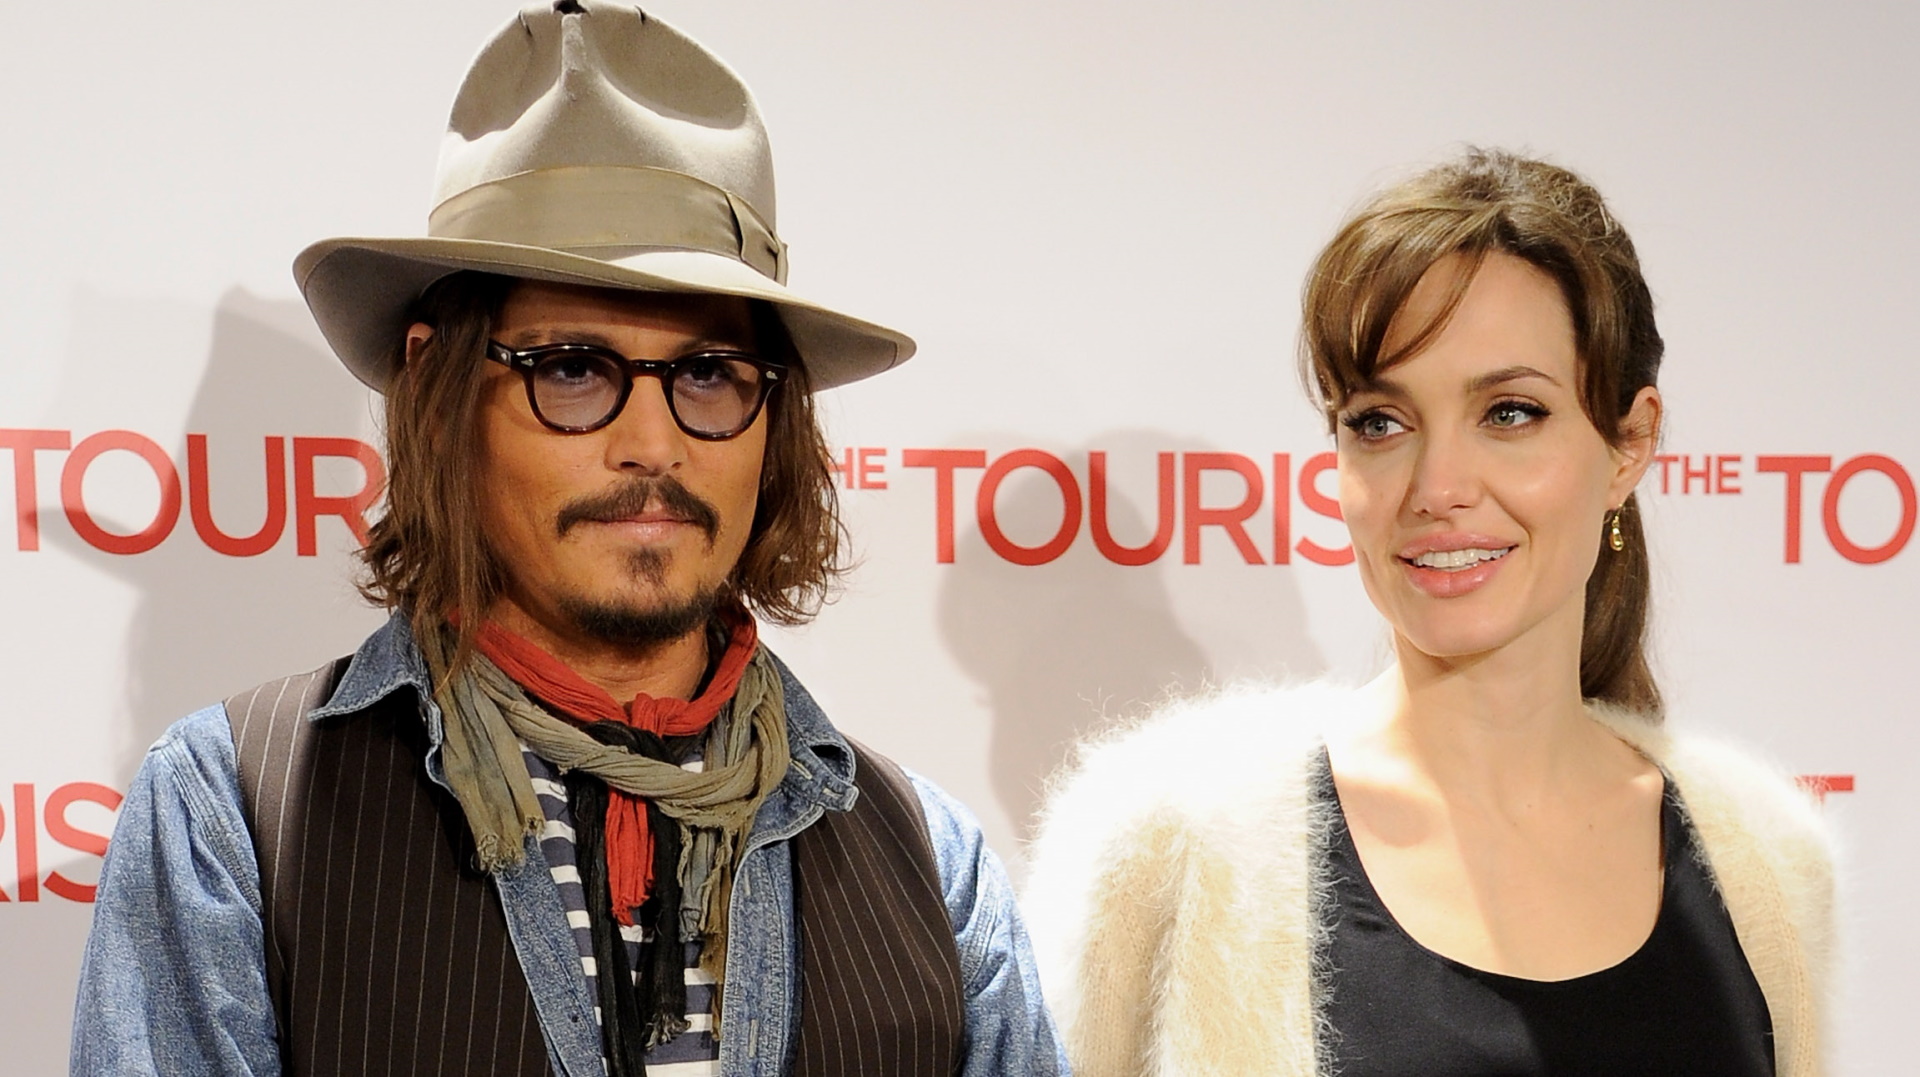 <p><strong>Джони Деп и Анджелина Джоли</strong></p>

<p>Двете суперзвезди работиха заедно през 2010 г. във филма &bdquo;Туристът&ldquo;. Уникалната химия, която наблюдаваме на екрана обаче в реалния живот я няма, тъй като се твърди, че Деп и Джоли изобщо не се разбирали.</p>